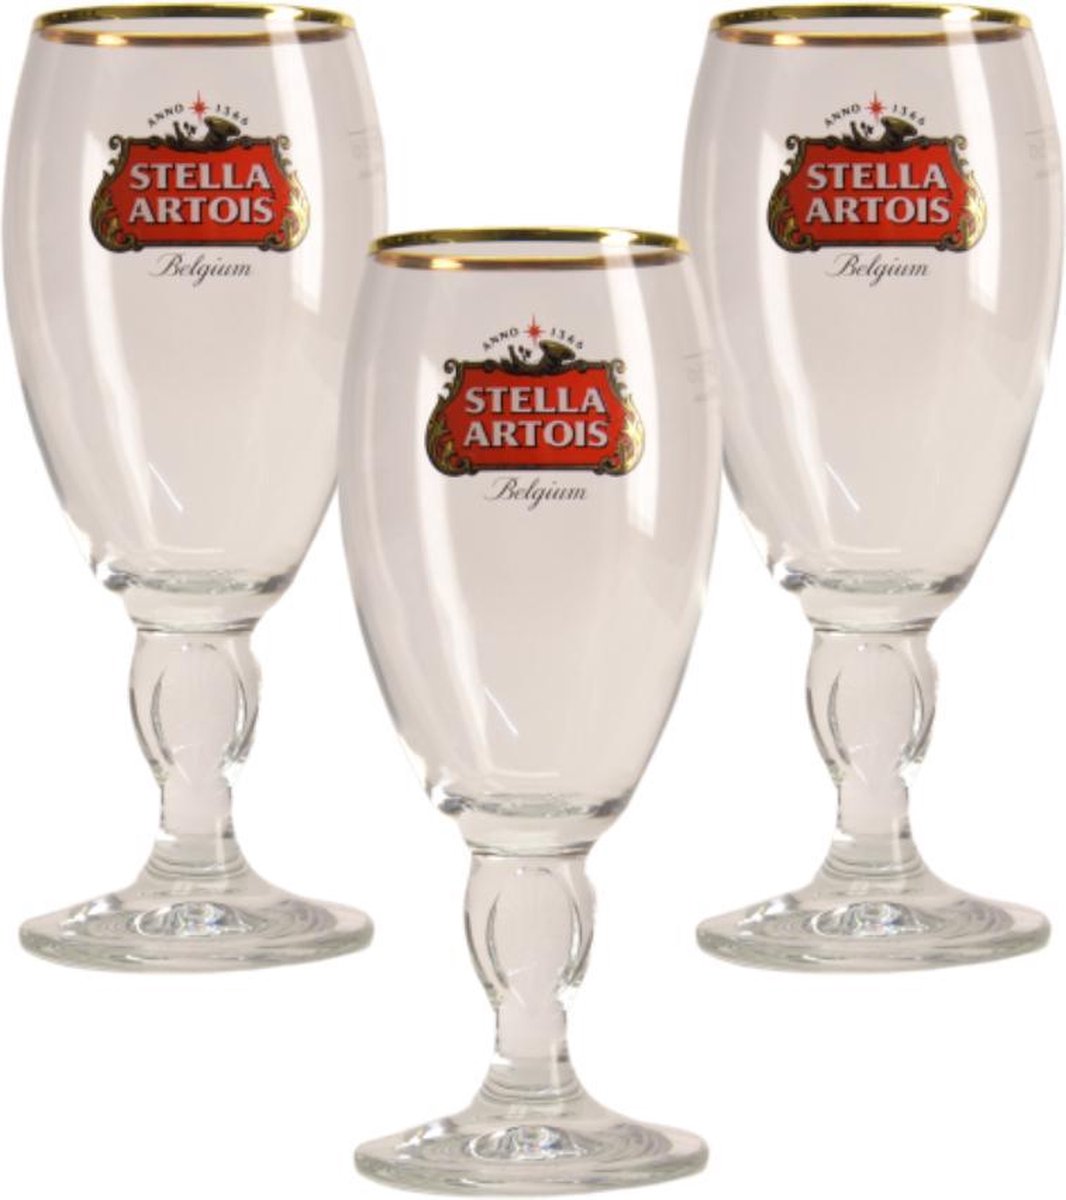 Stella Artois op voet Bierglas - 25cl - Set van 3